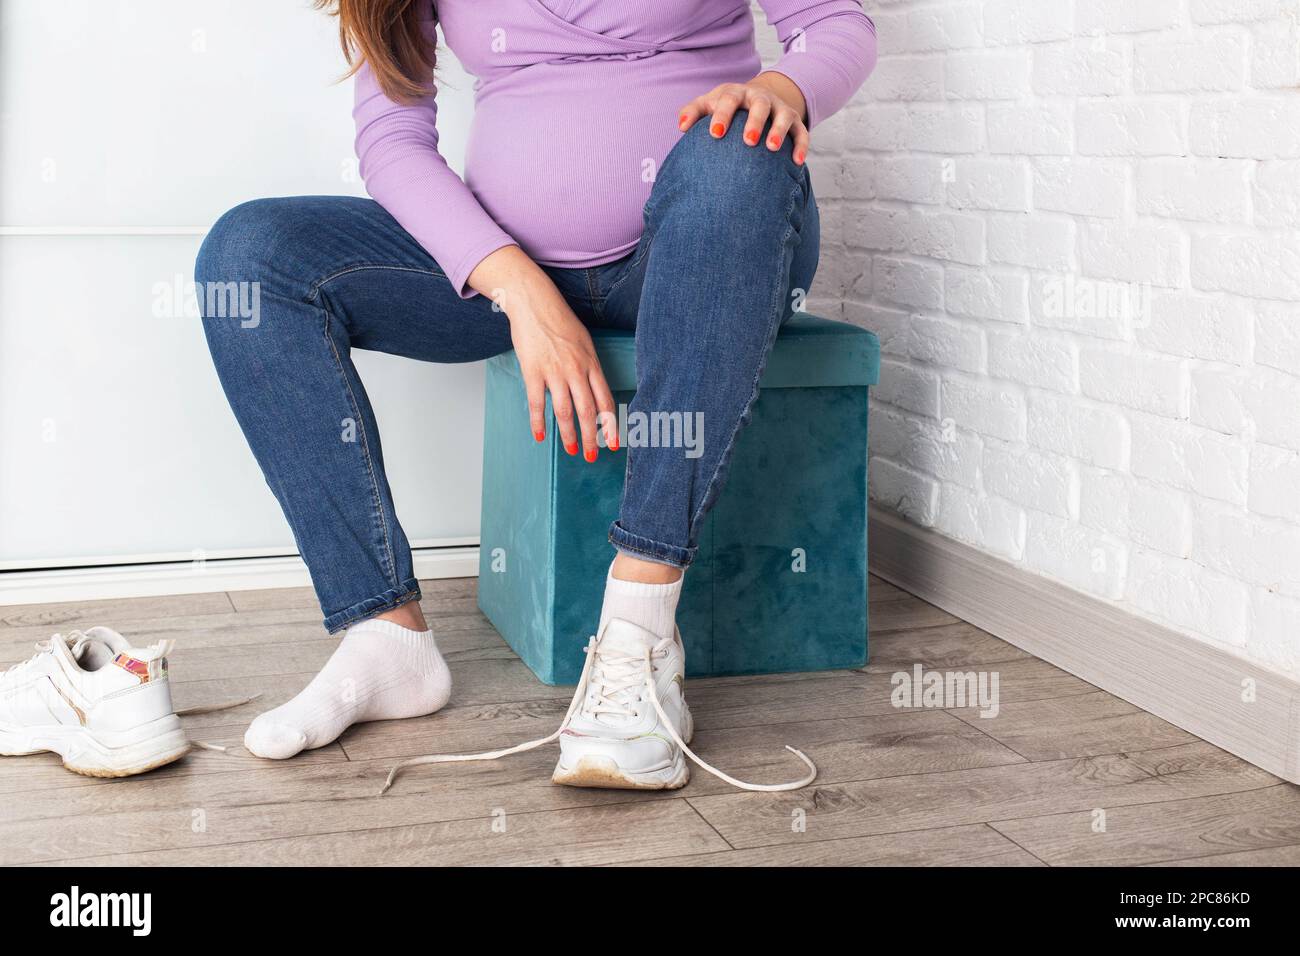 Une femme enceinte avec un gros ventre met des baskets sur ses pieds. Le  concept d'inconfort et de désagrément lors de la flexion et de la mise sur  des chaussures. Con Photo